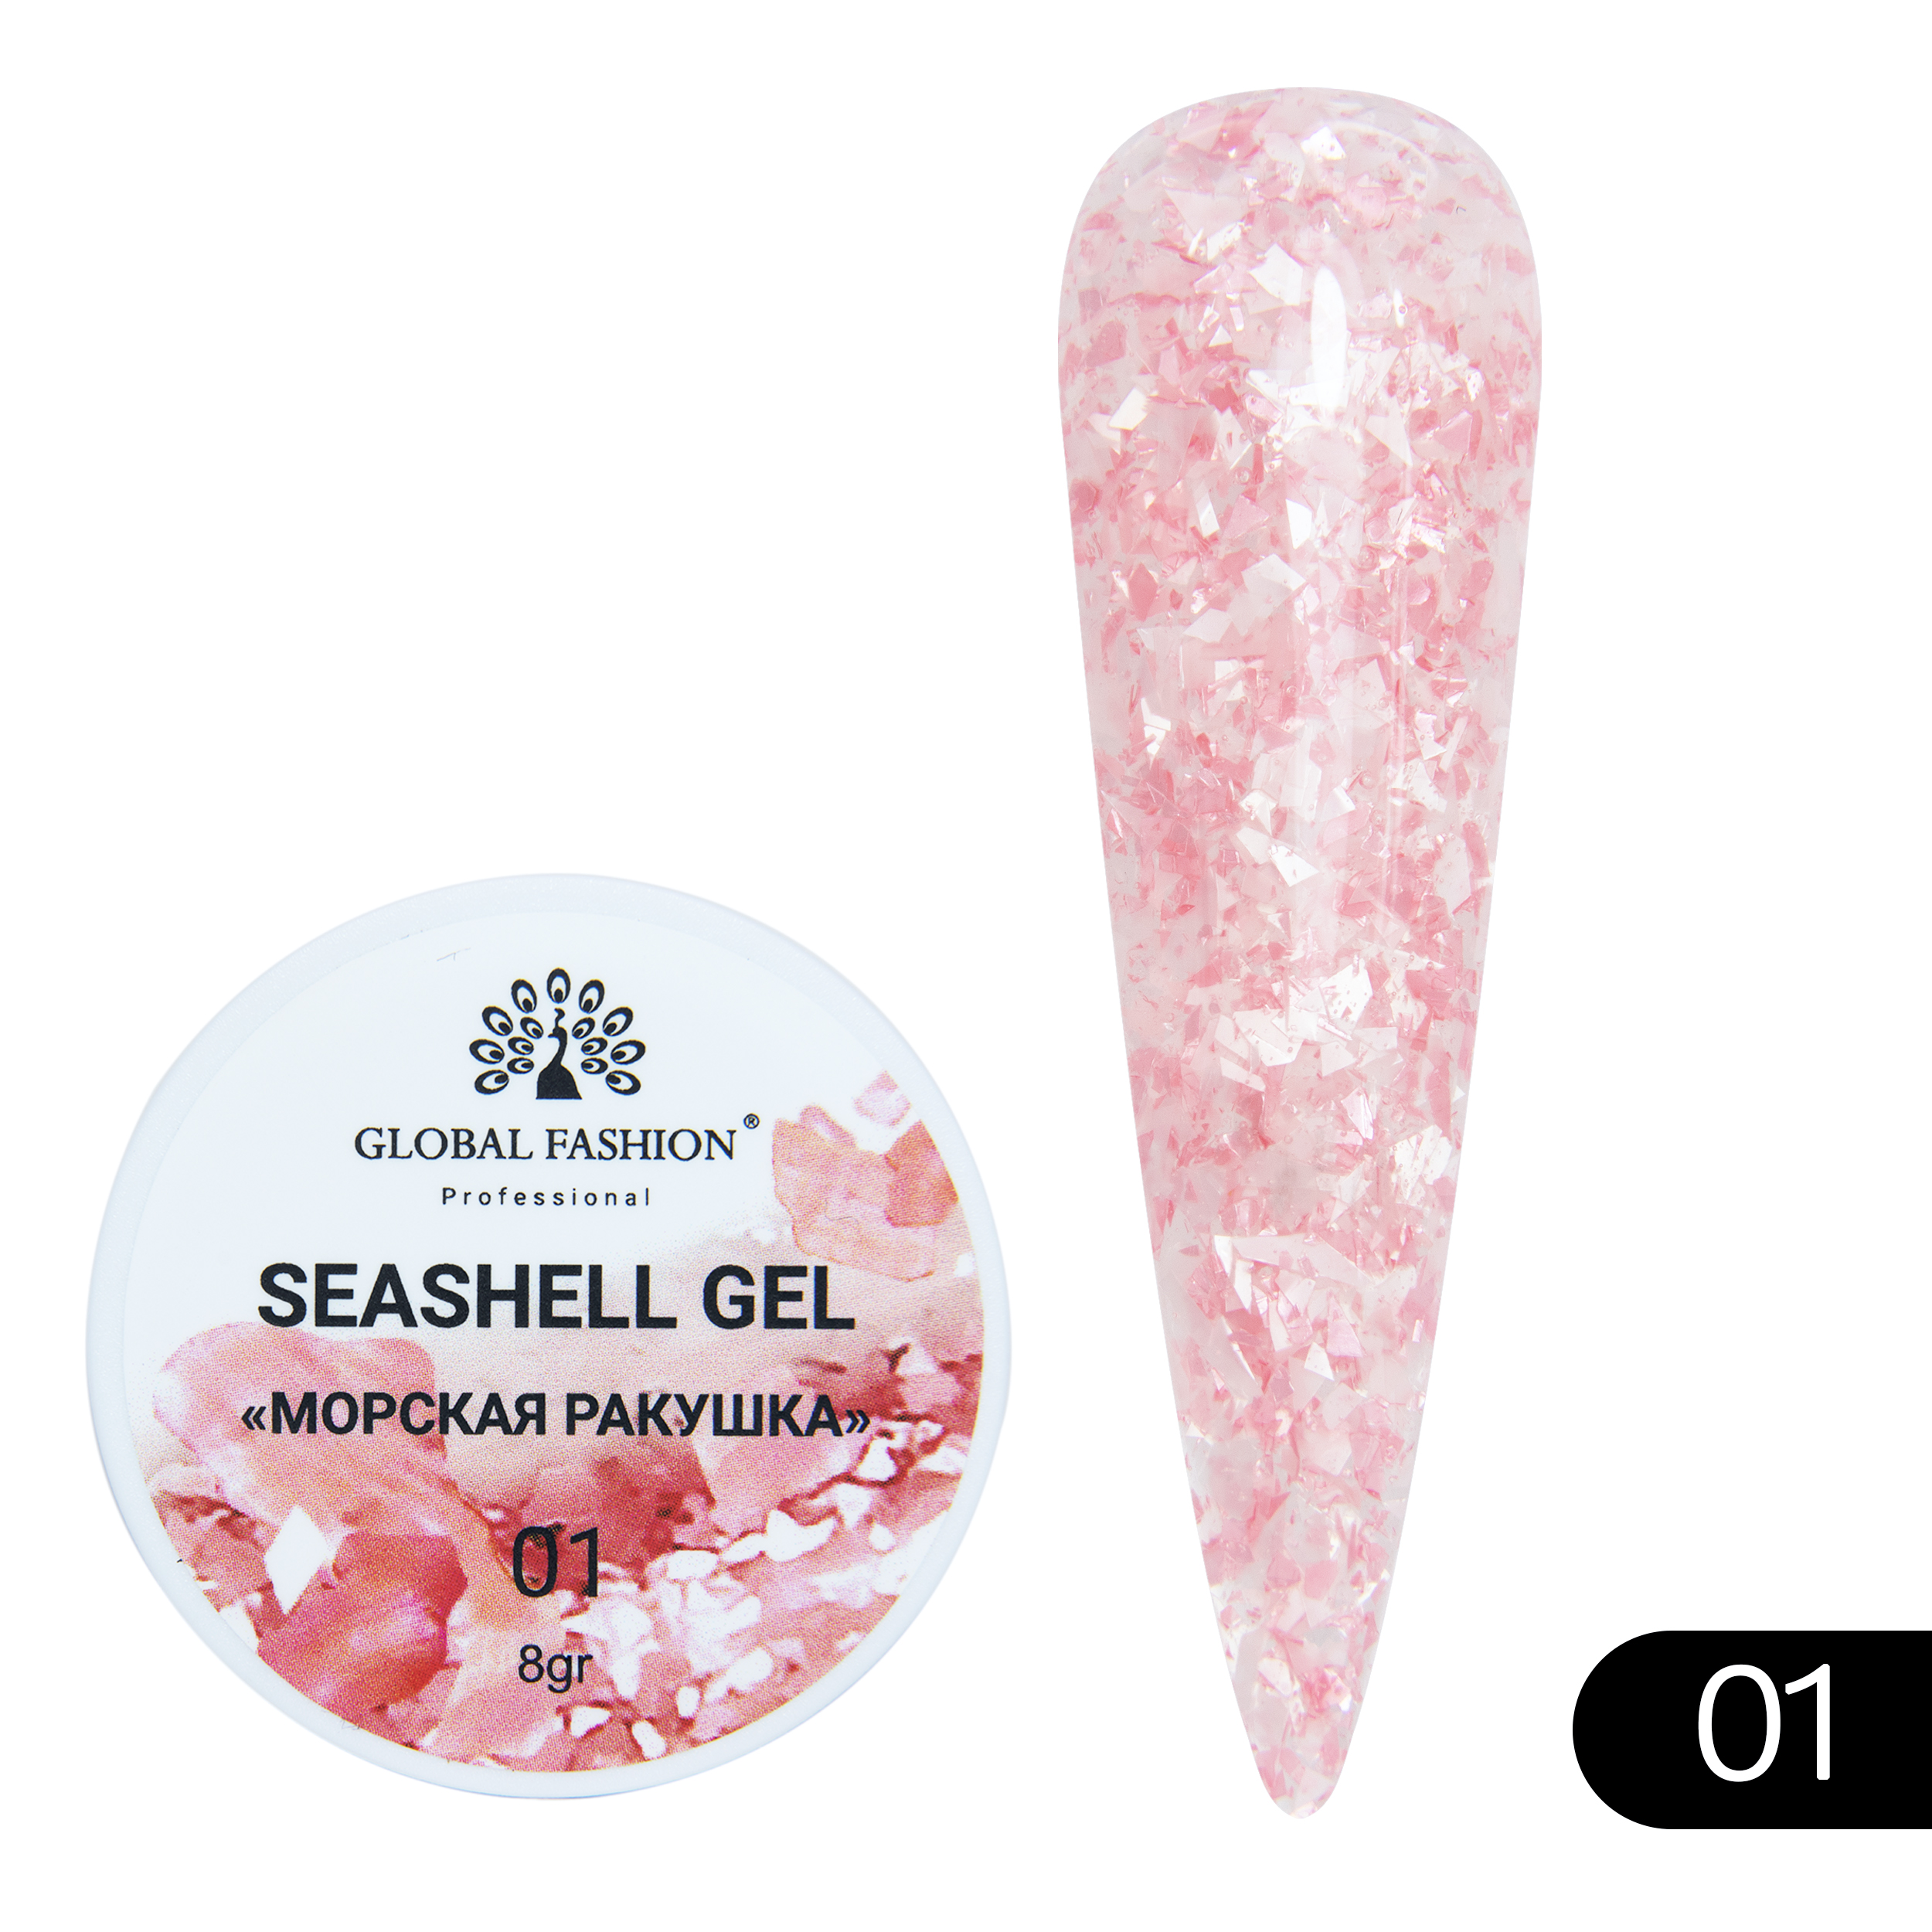 Гель-краска для ногтей Global Fashion Seashell Gel с мраморным эффектом ракушки №01 5 г